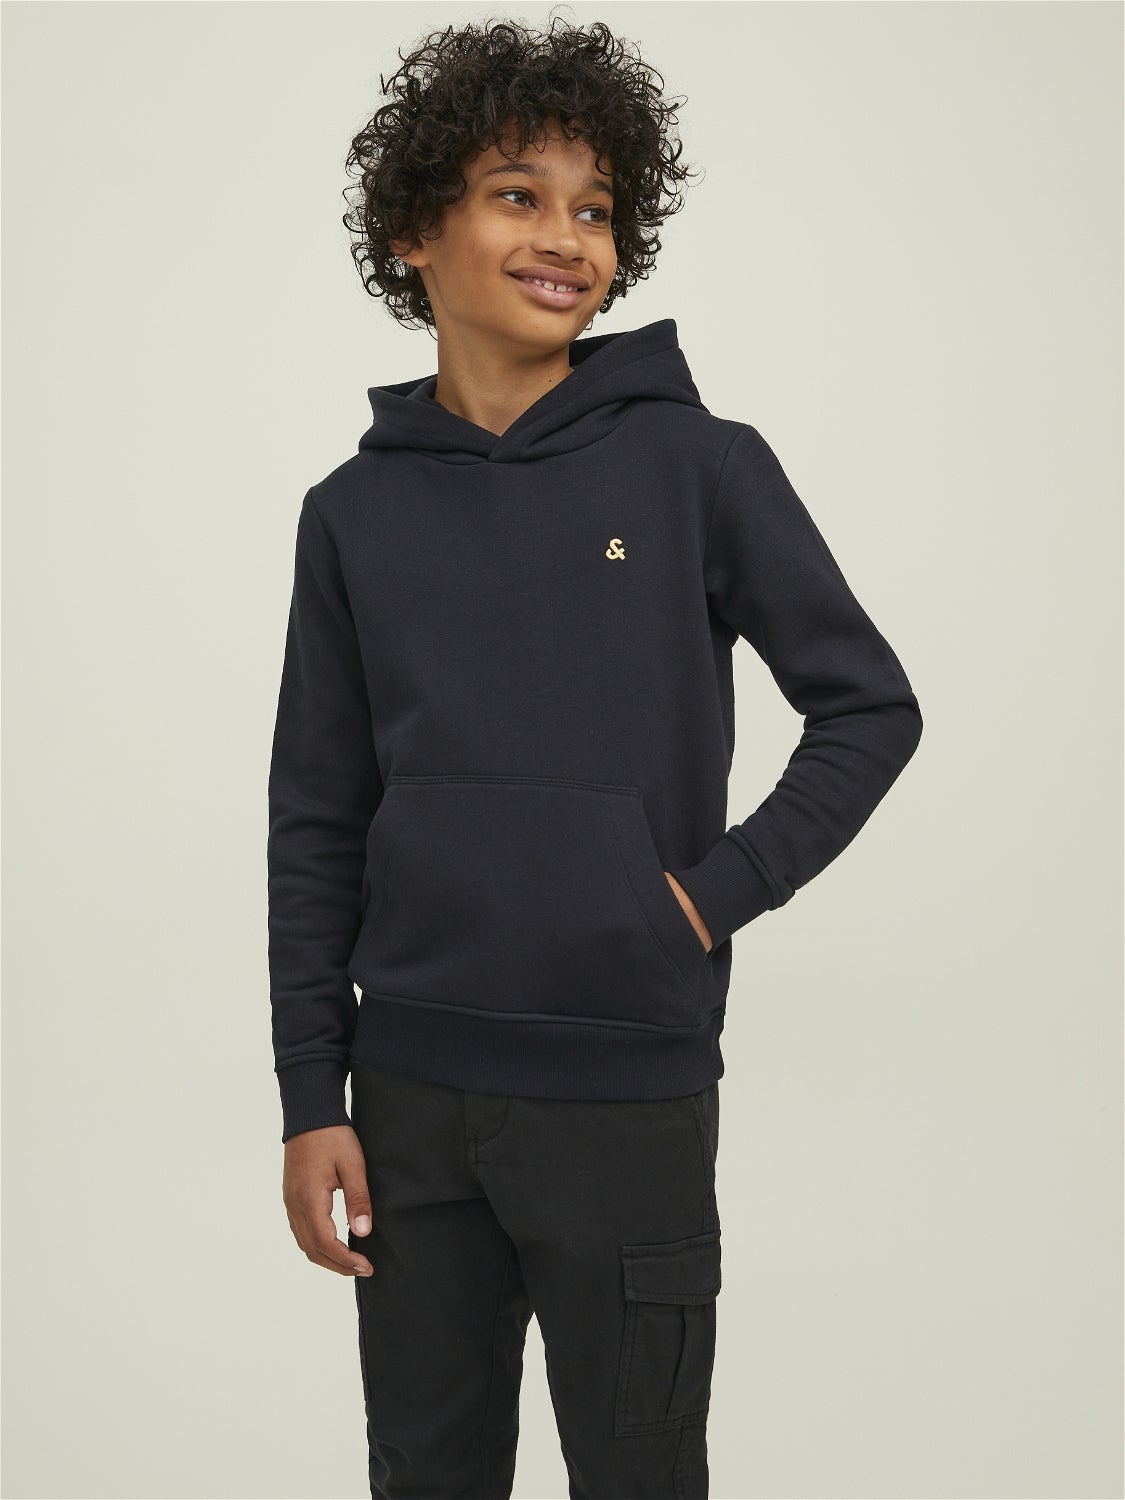 Schwarz 12Y KINDER Pullovers & Sweatshirts NO STYLE Jack & Jones sweatshirt Rabatt 62 % 